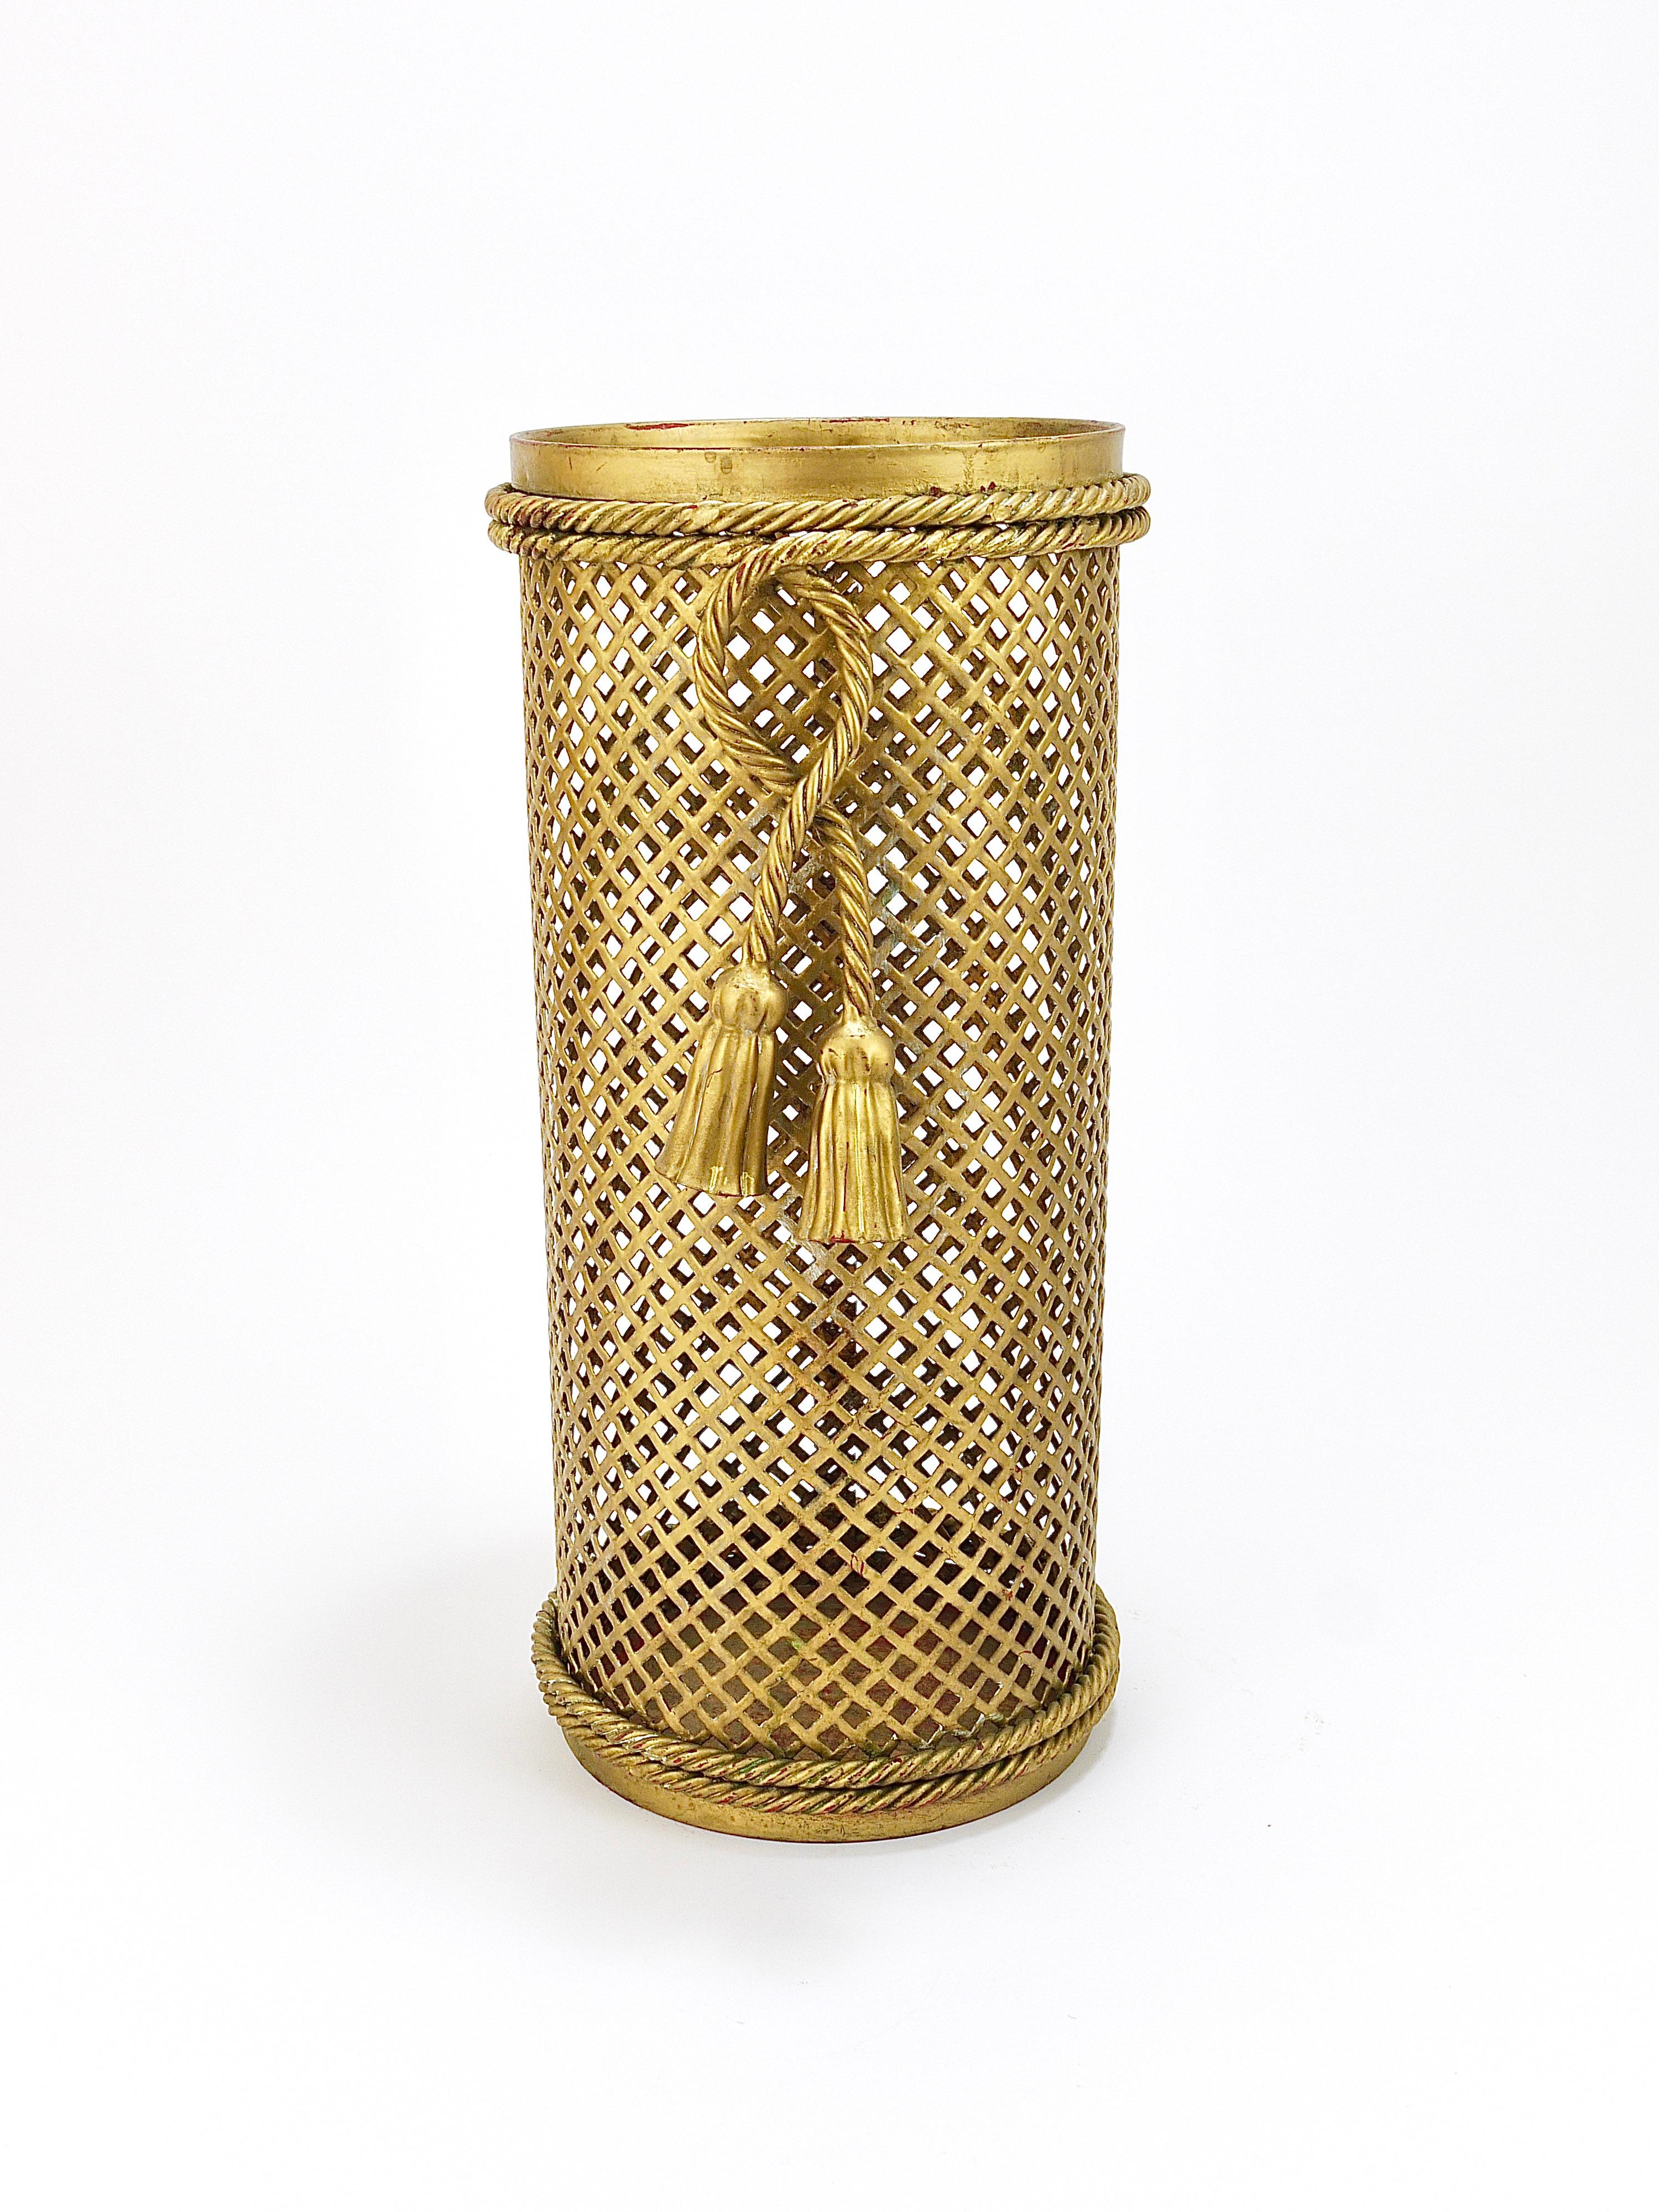 Magnifique porte-parapluie cylindrique Hollywood Regency des années 1950, fabriqué par Li Puma, Firenze en Italie. Réalisé en métal tissé en forme de treillis doré, entouré d'une corde nouée avec deux glands. Peut également être utilisé comme